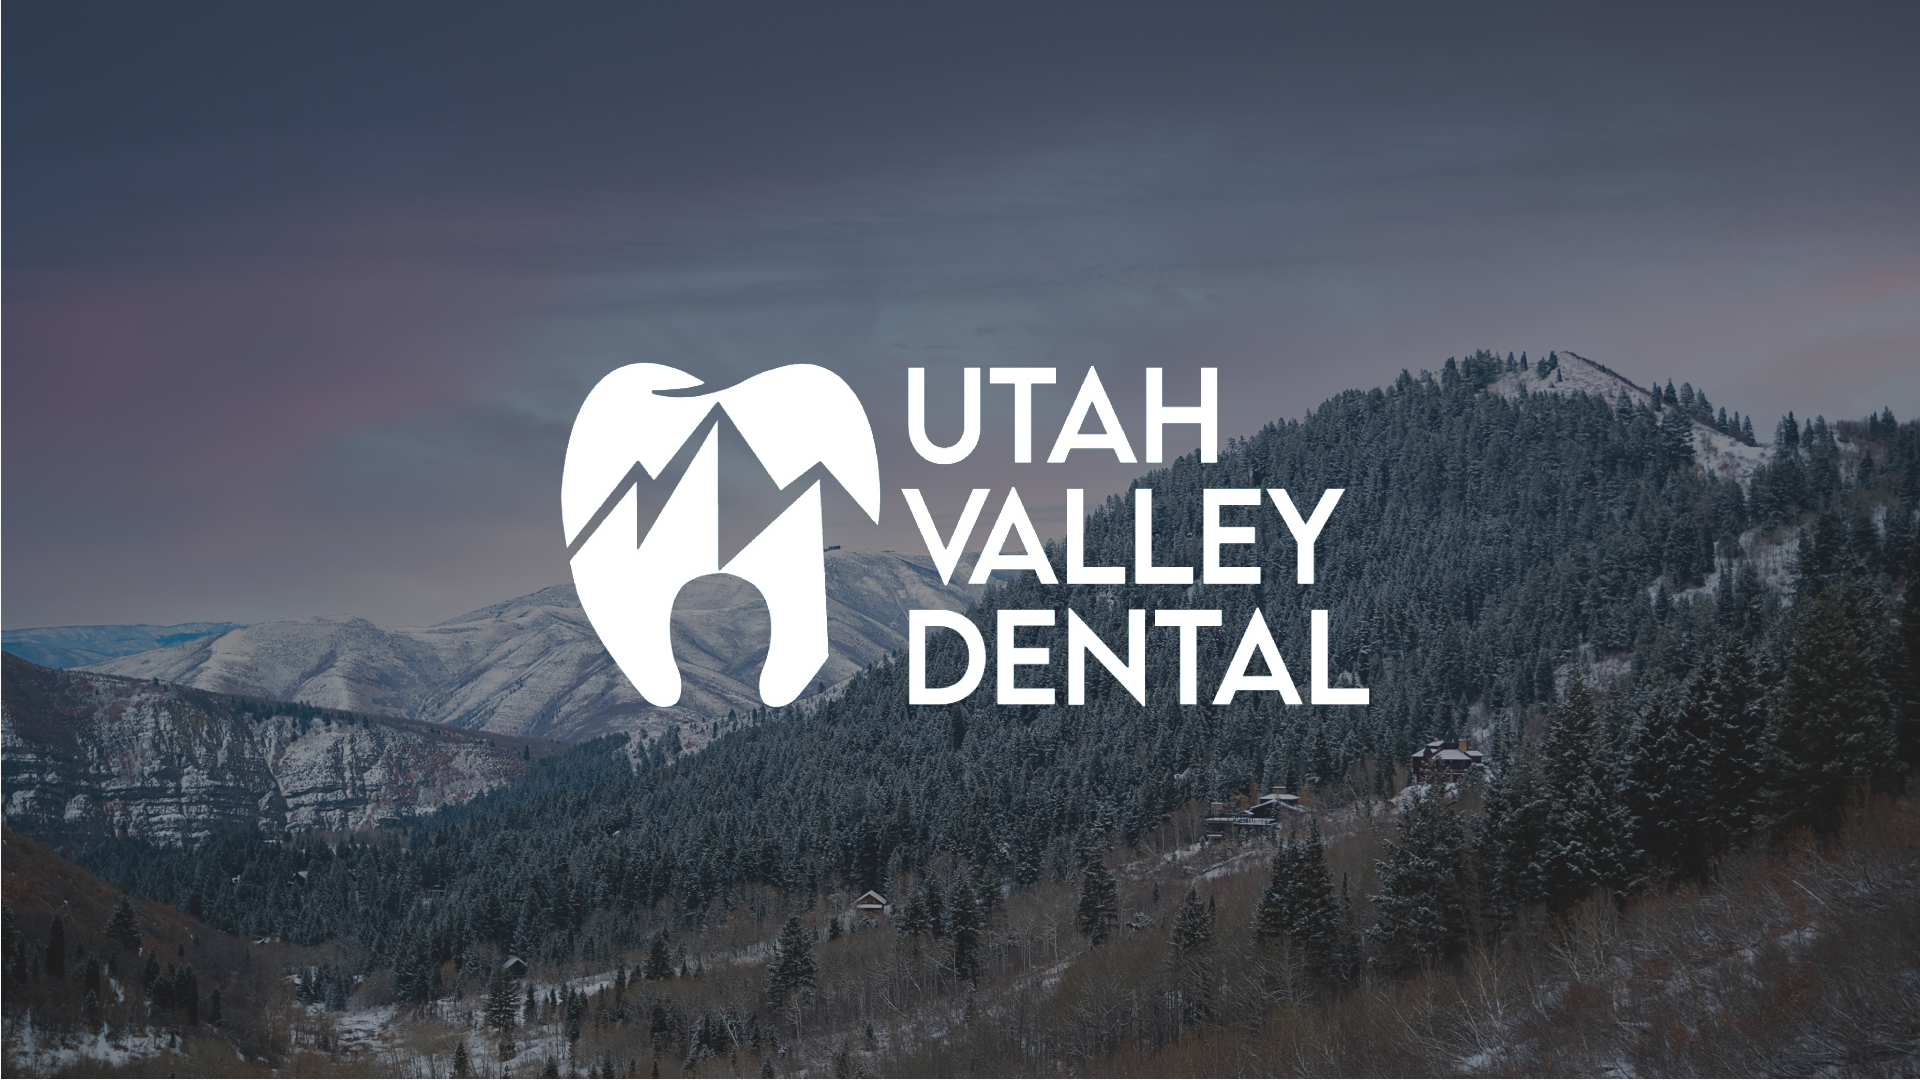 Utah Valley Dental